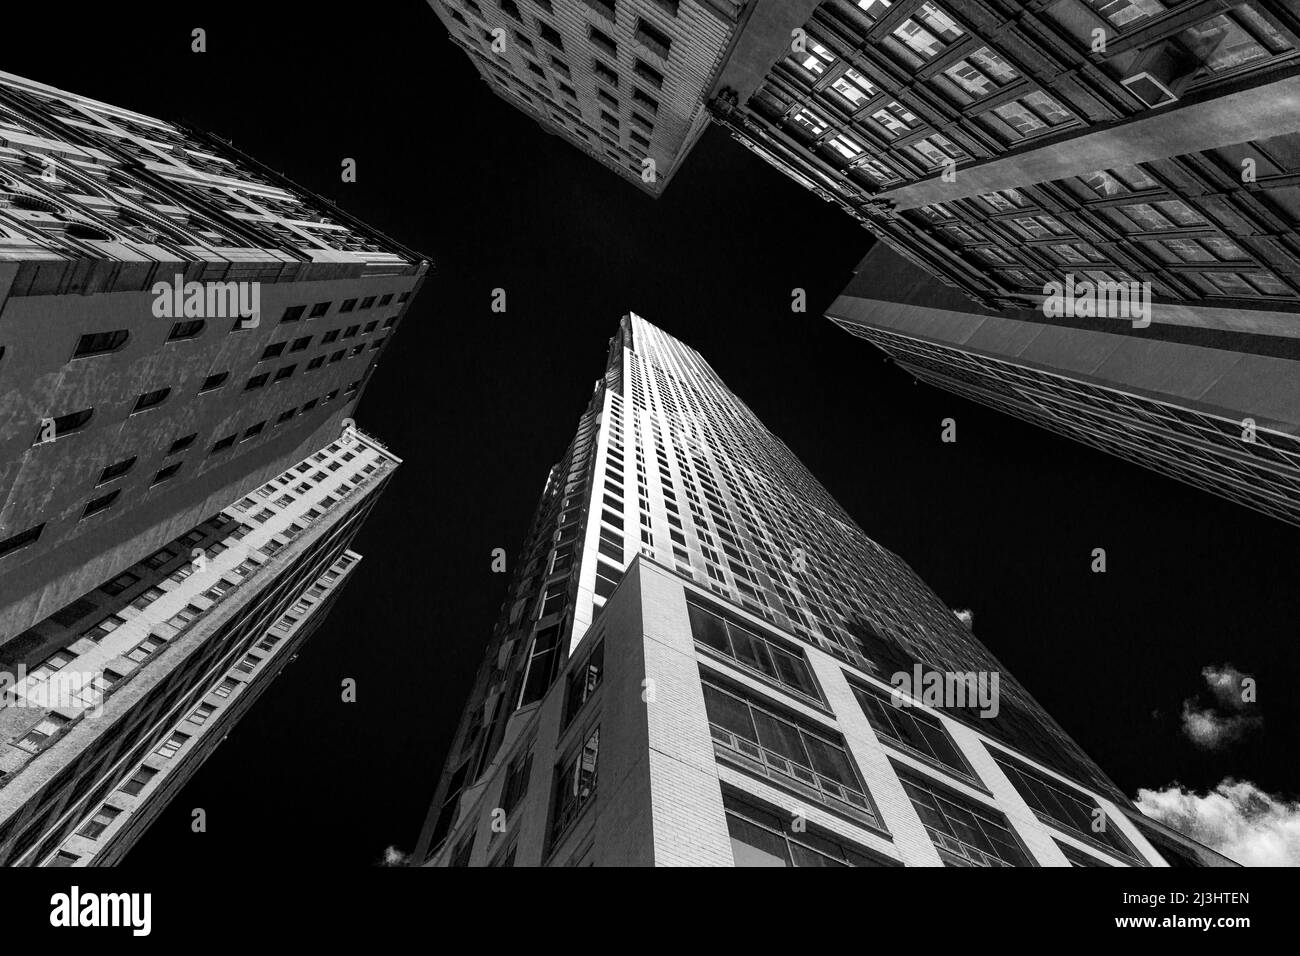 Quartier financier, New York City, NY, USA, Tour Beekman de Frank Gehry contenant des appartements de luxe dans la ville de New York, New York. Banque D'Images